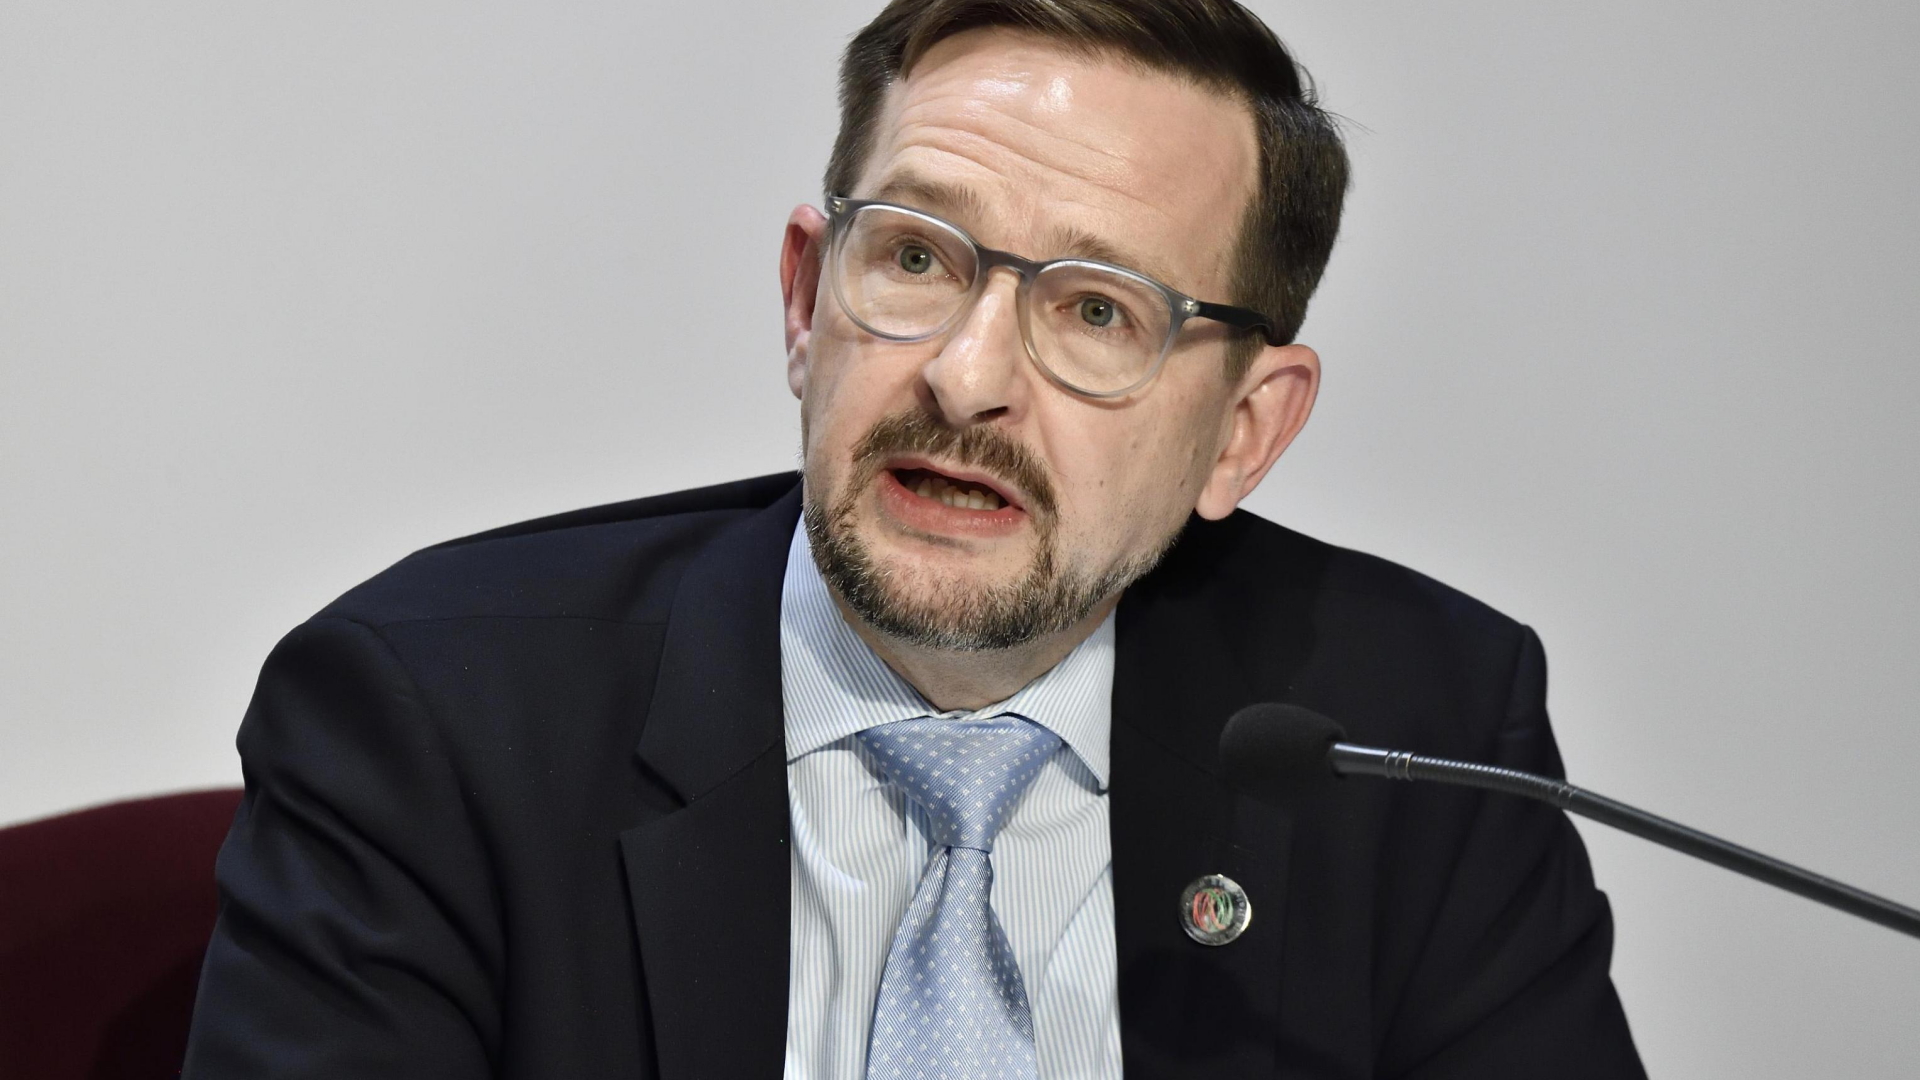 OSZE-Generalsekretär Thomas Greminger